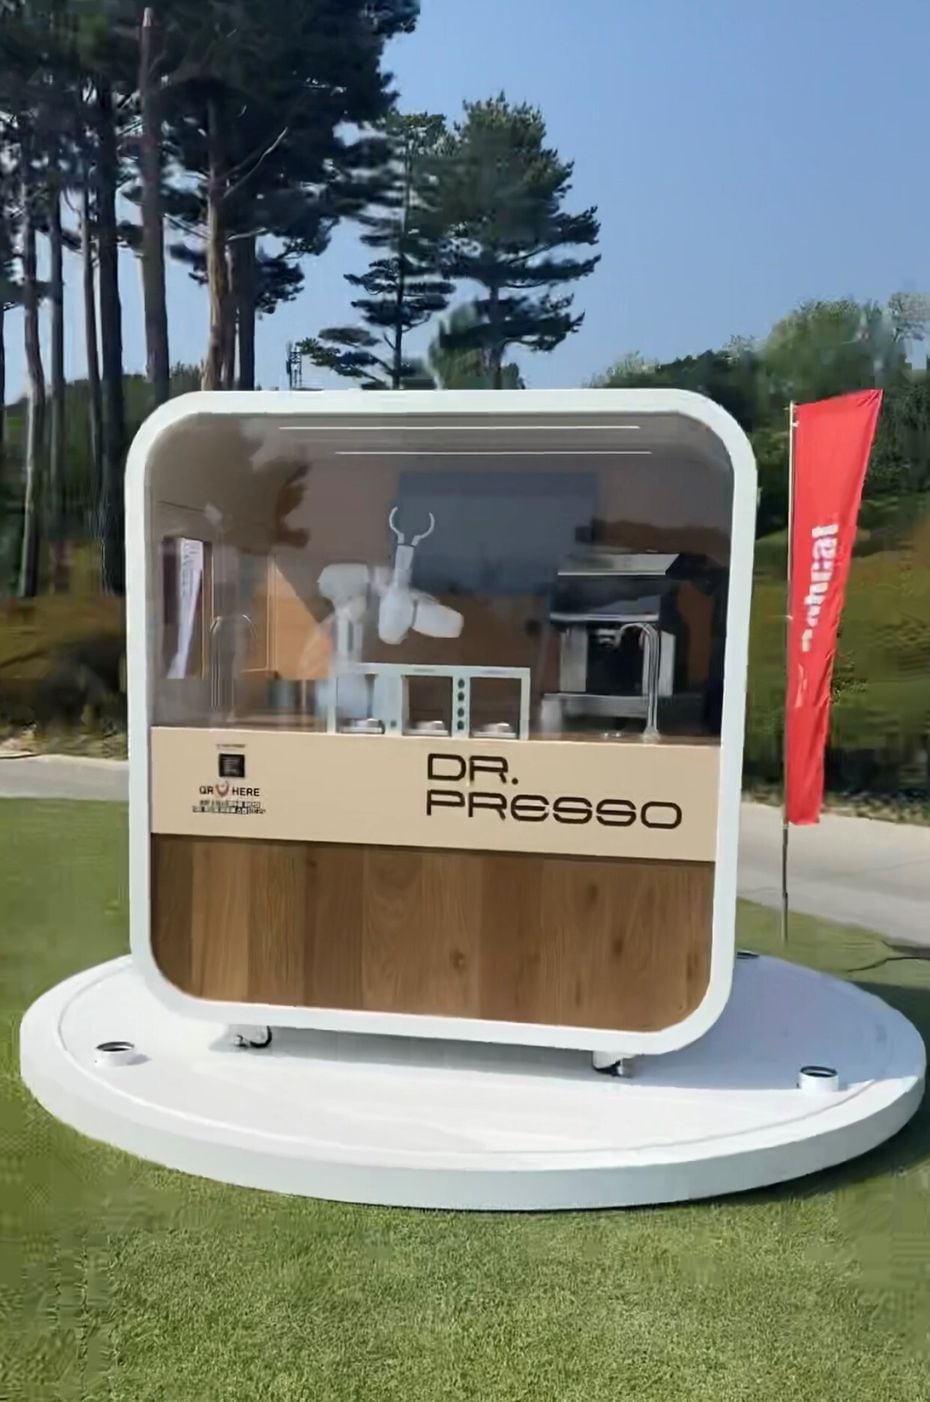 Dr. Presso coffee barista robot by Doosan Robotics